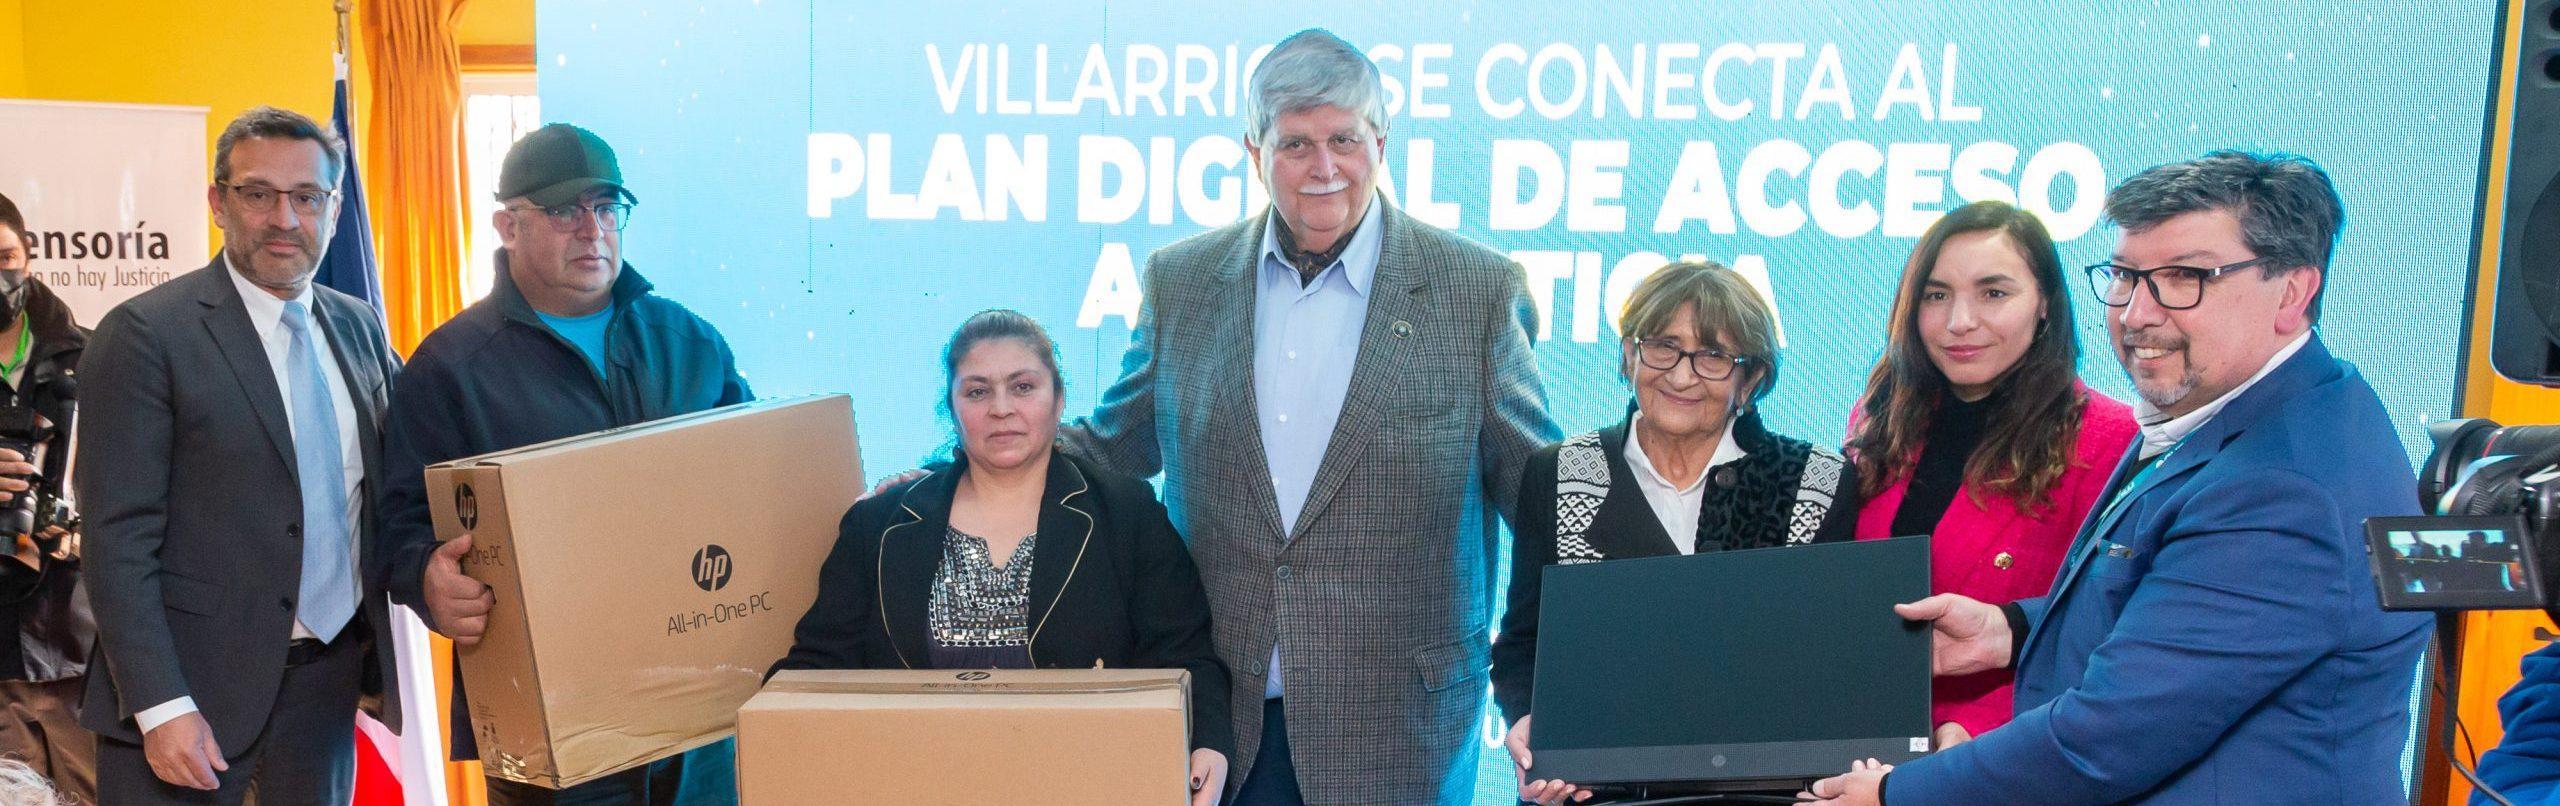 banner MUNDO en alianza con la Defensoría Penal Pública y la Municipalidad de Villarrica entregaron internet por Fibra Óptica a sedes vecinales